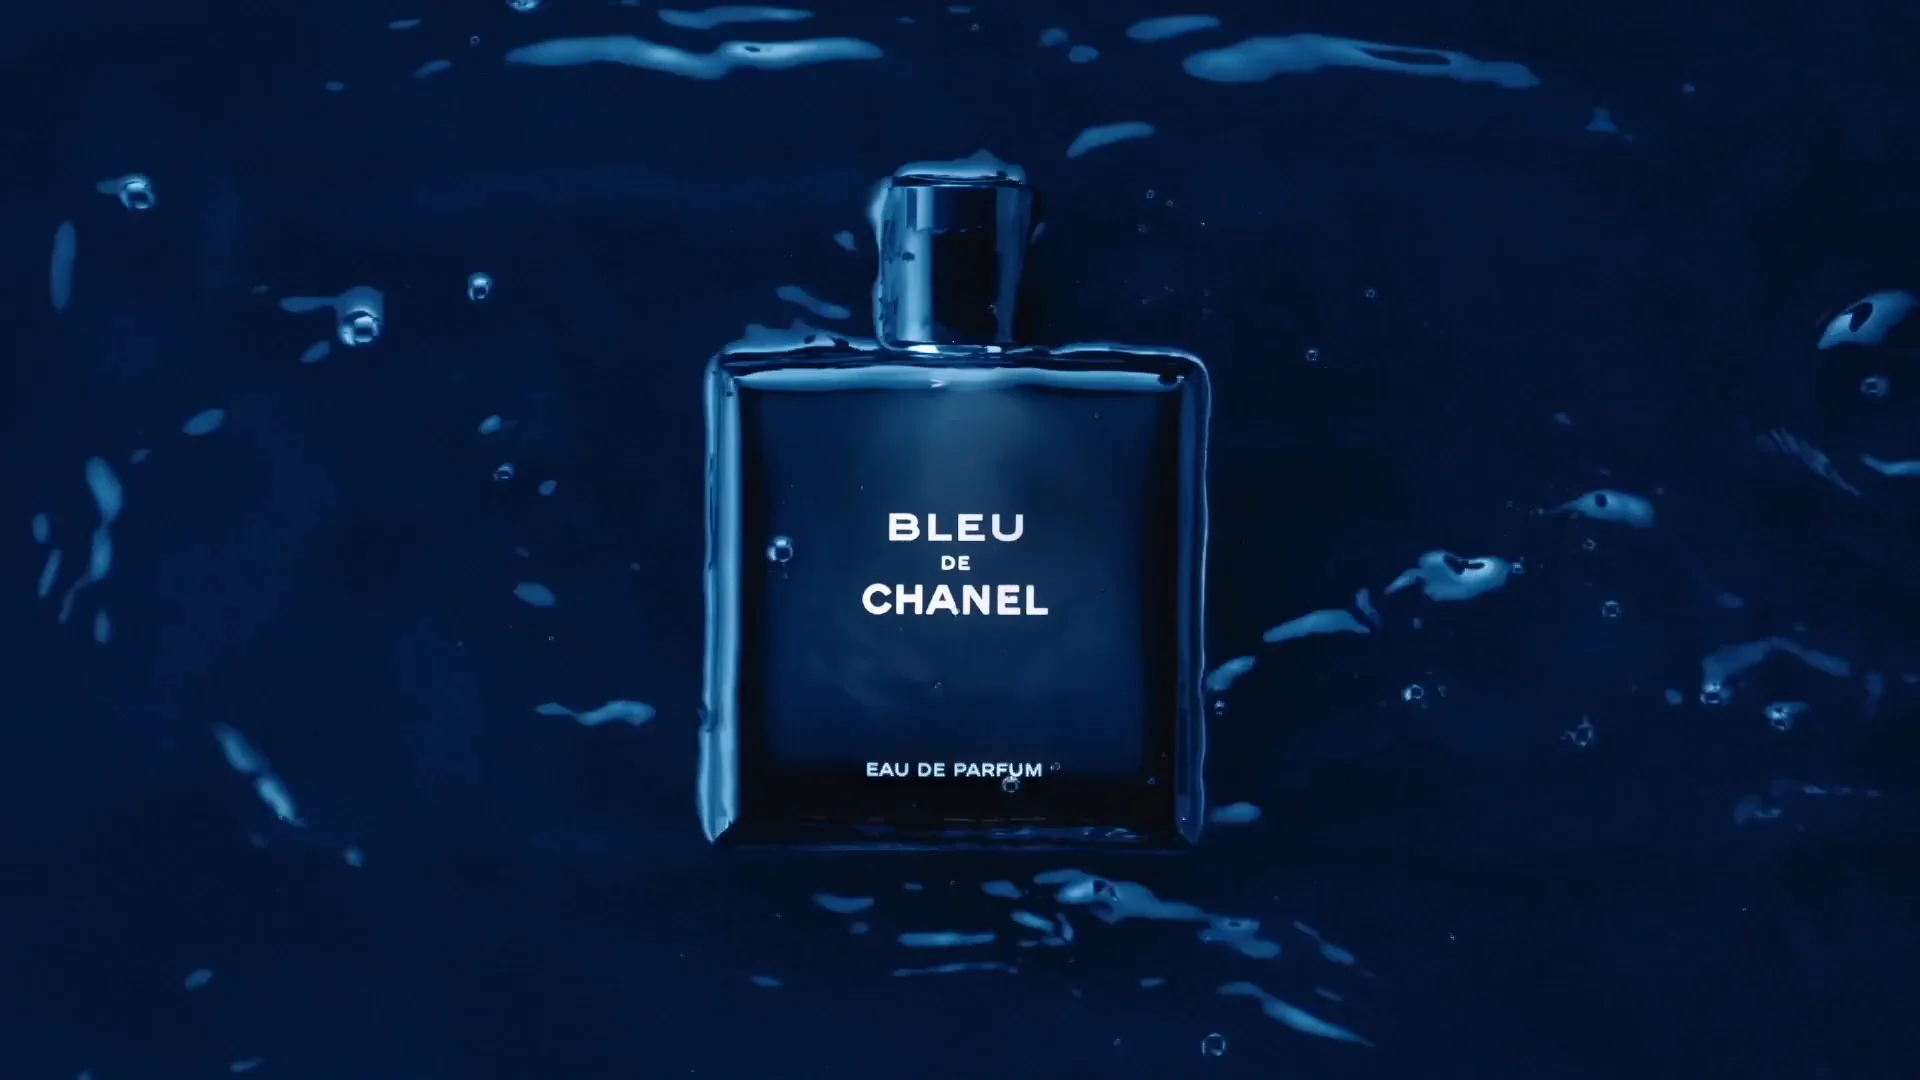 CHANEL • Bleu de Chanel // Eau de Parfum on Vimeo